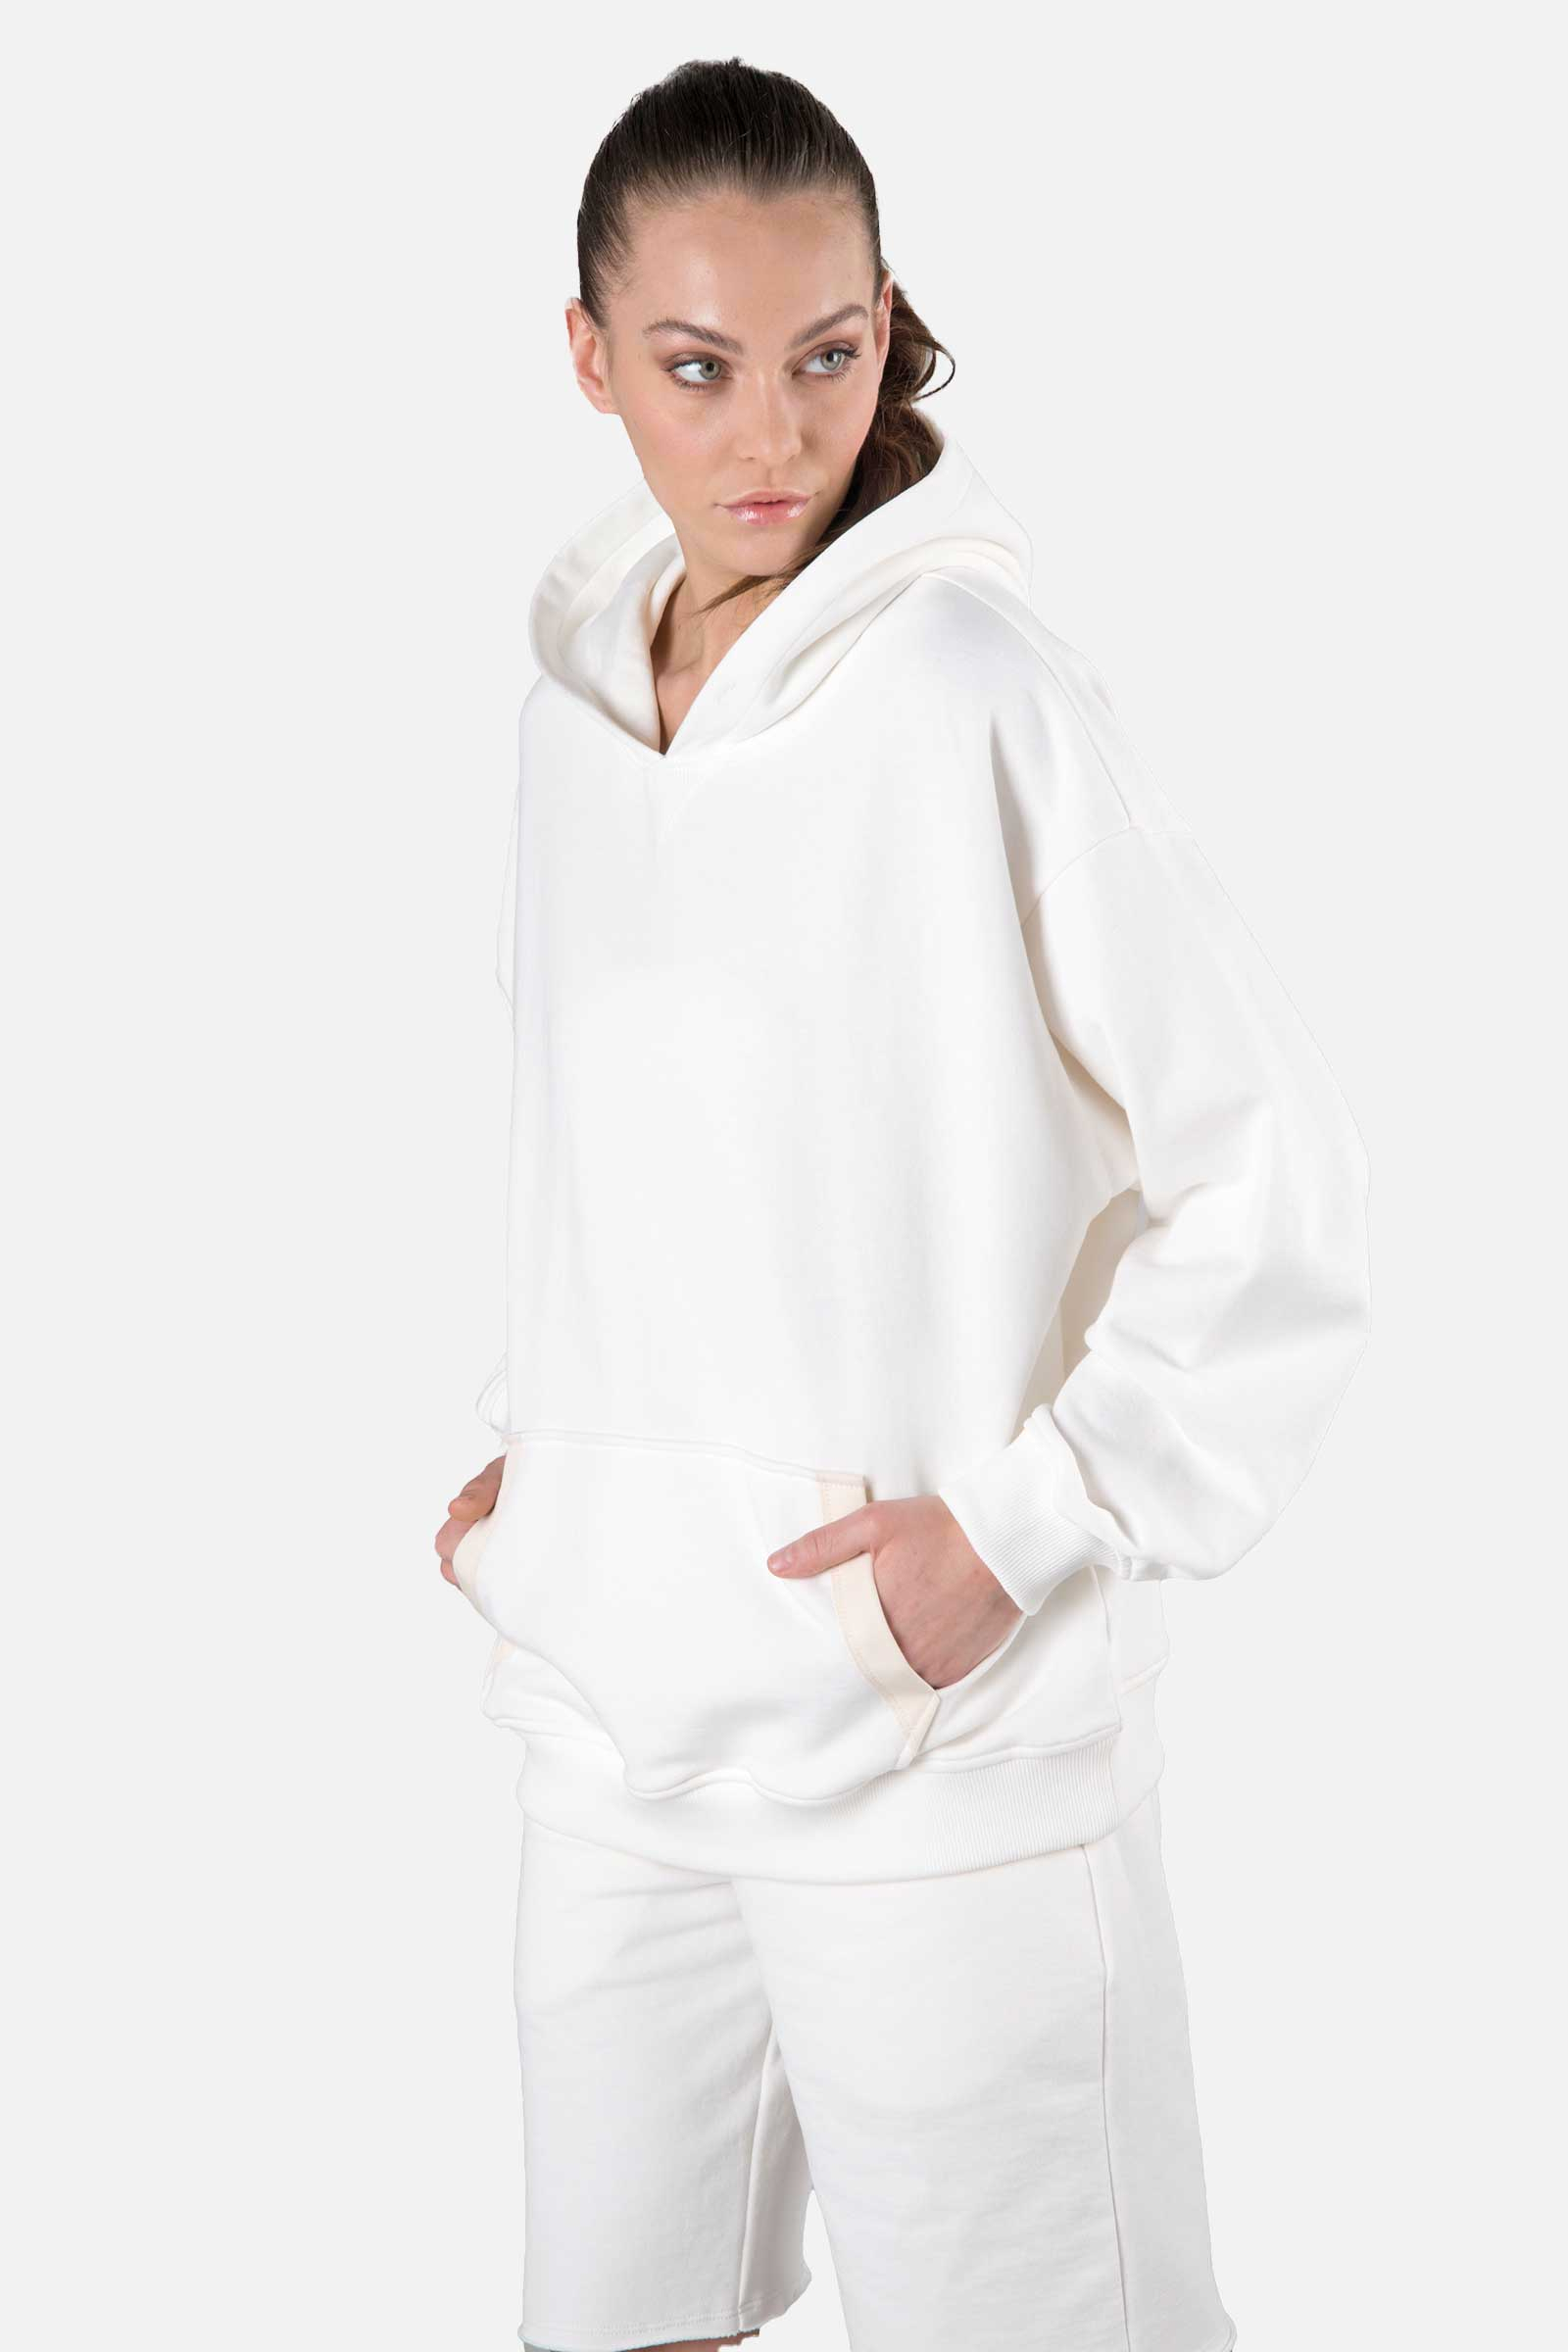 HOODIE - WHITE - Hydrogen - Luxury Sportwear